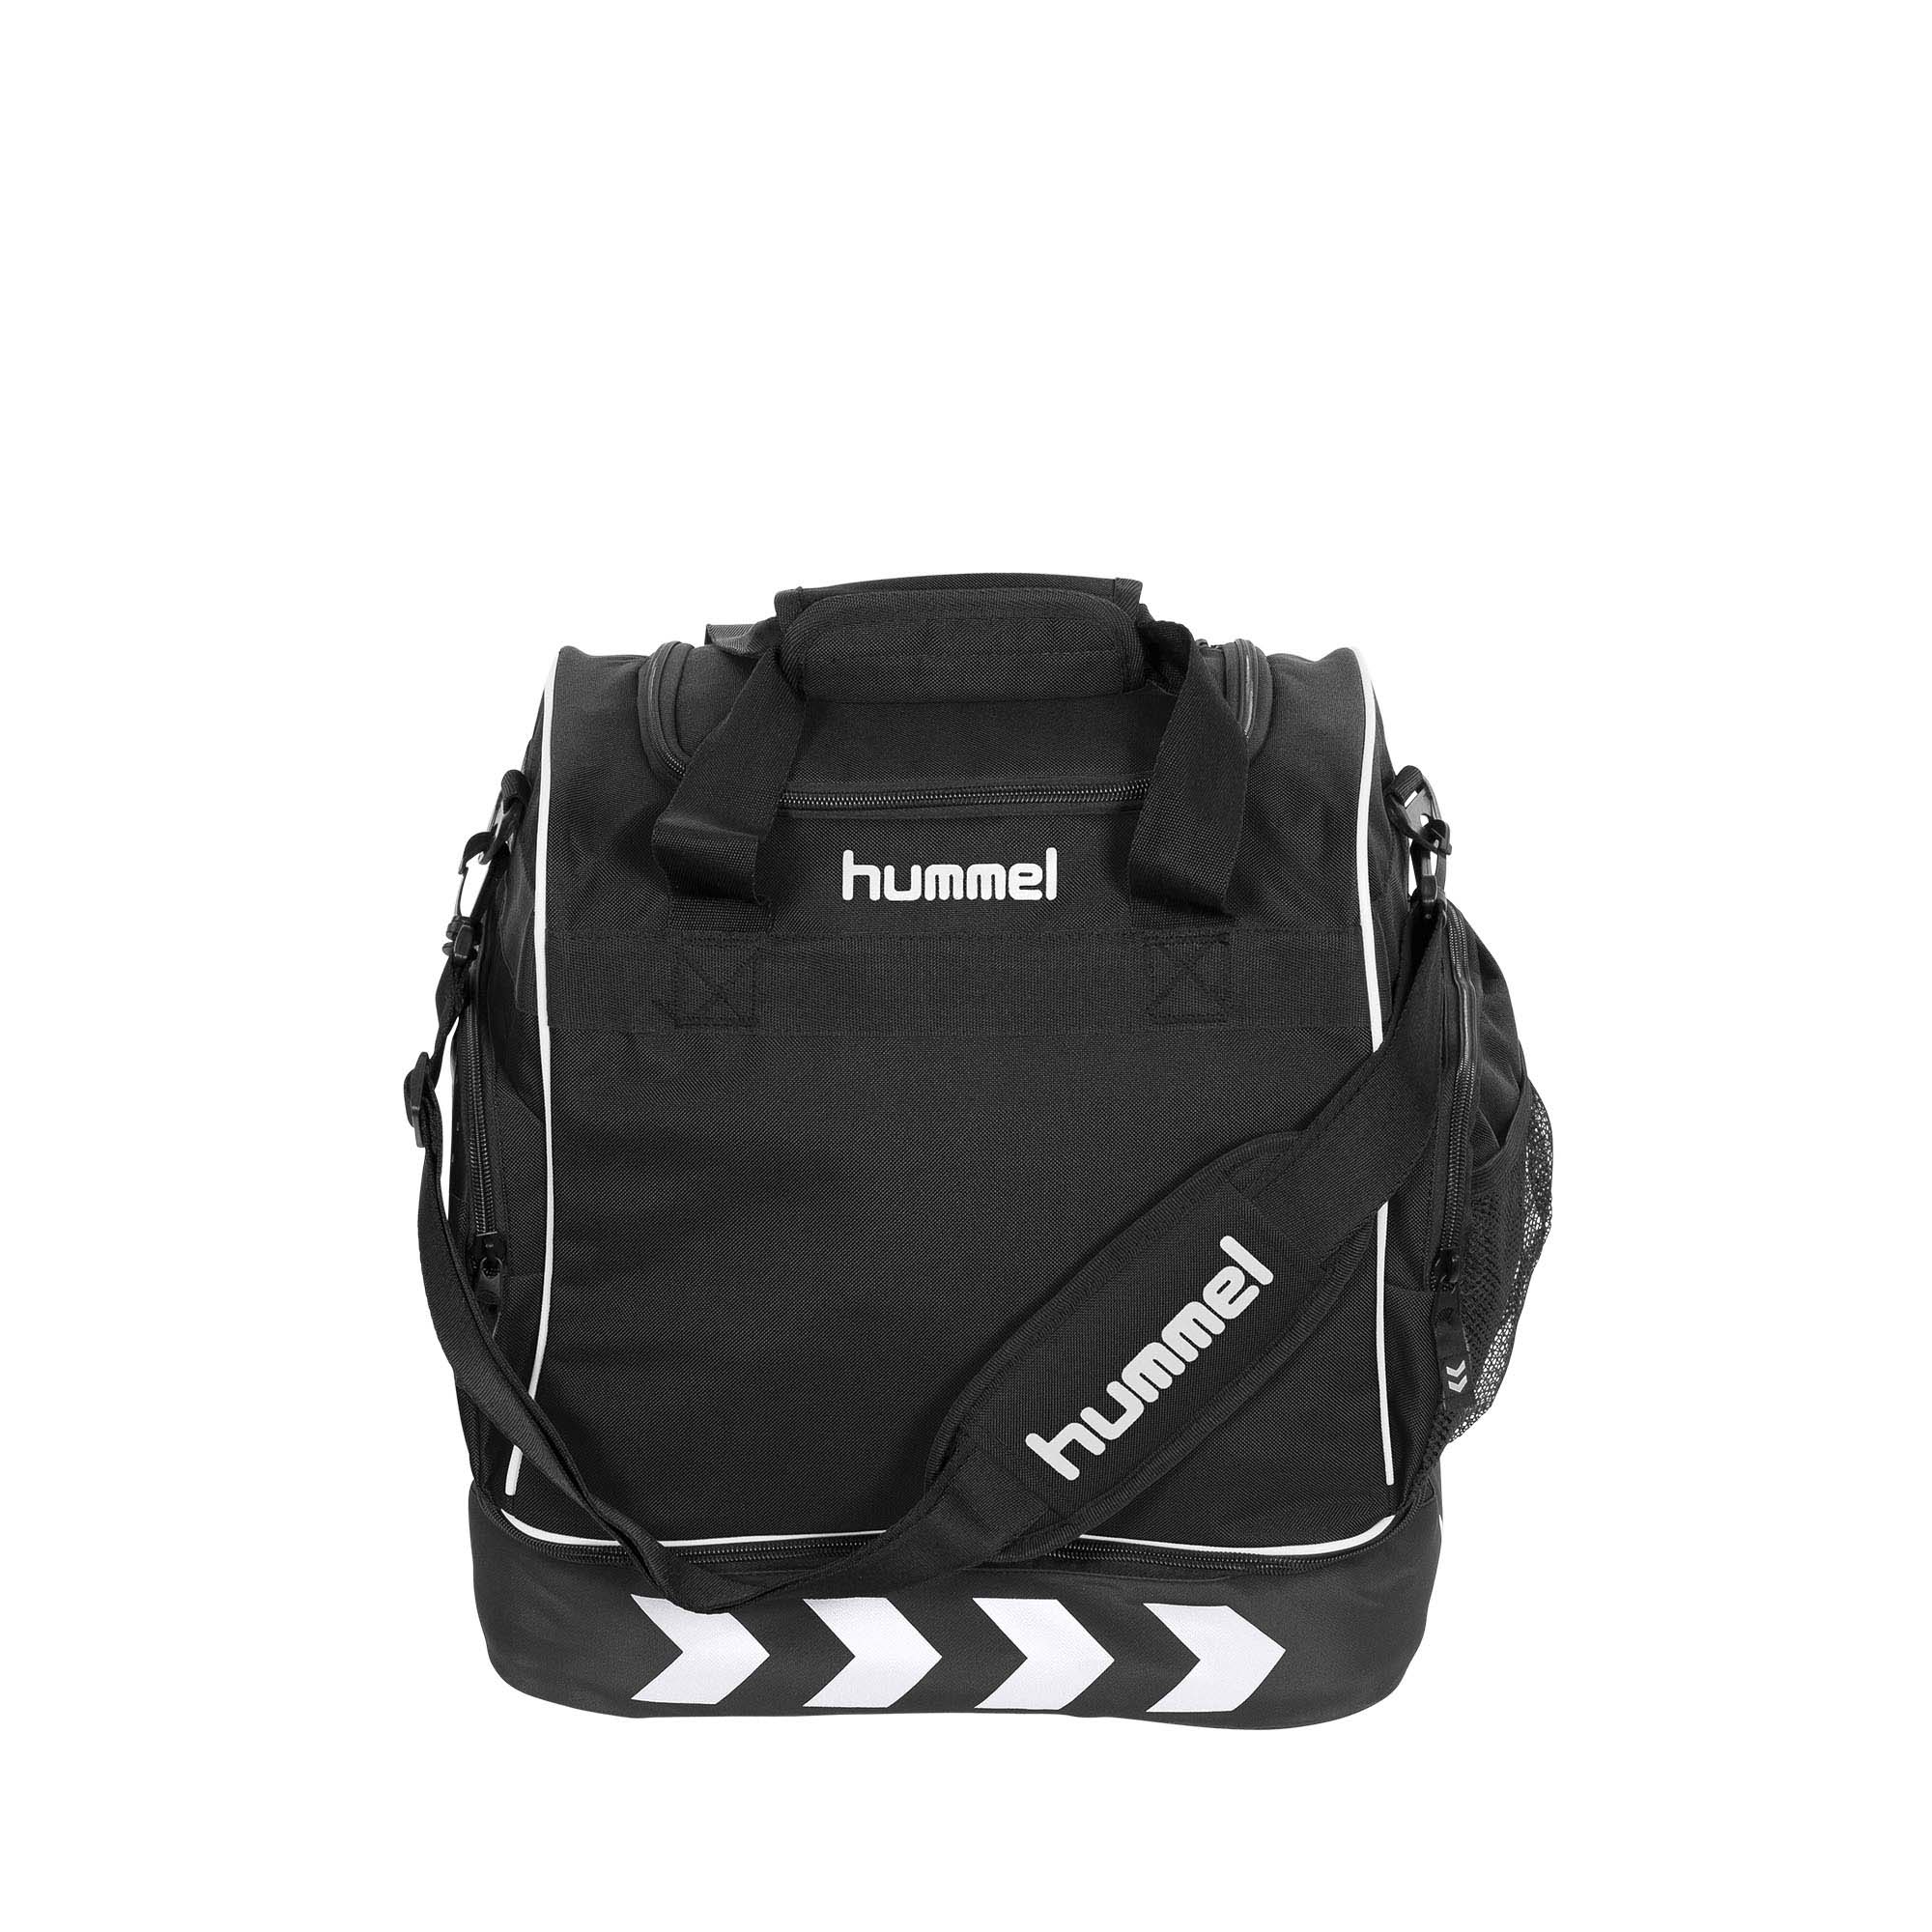 hummel bagpack pro supreme